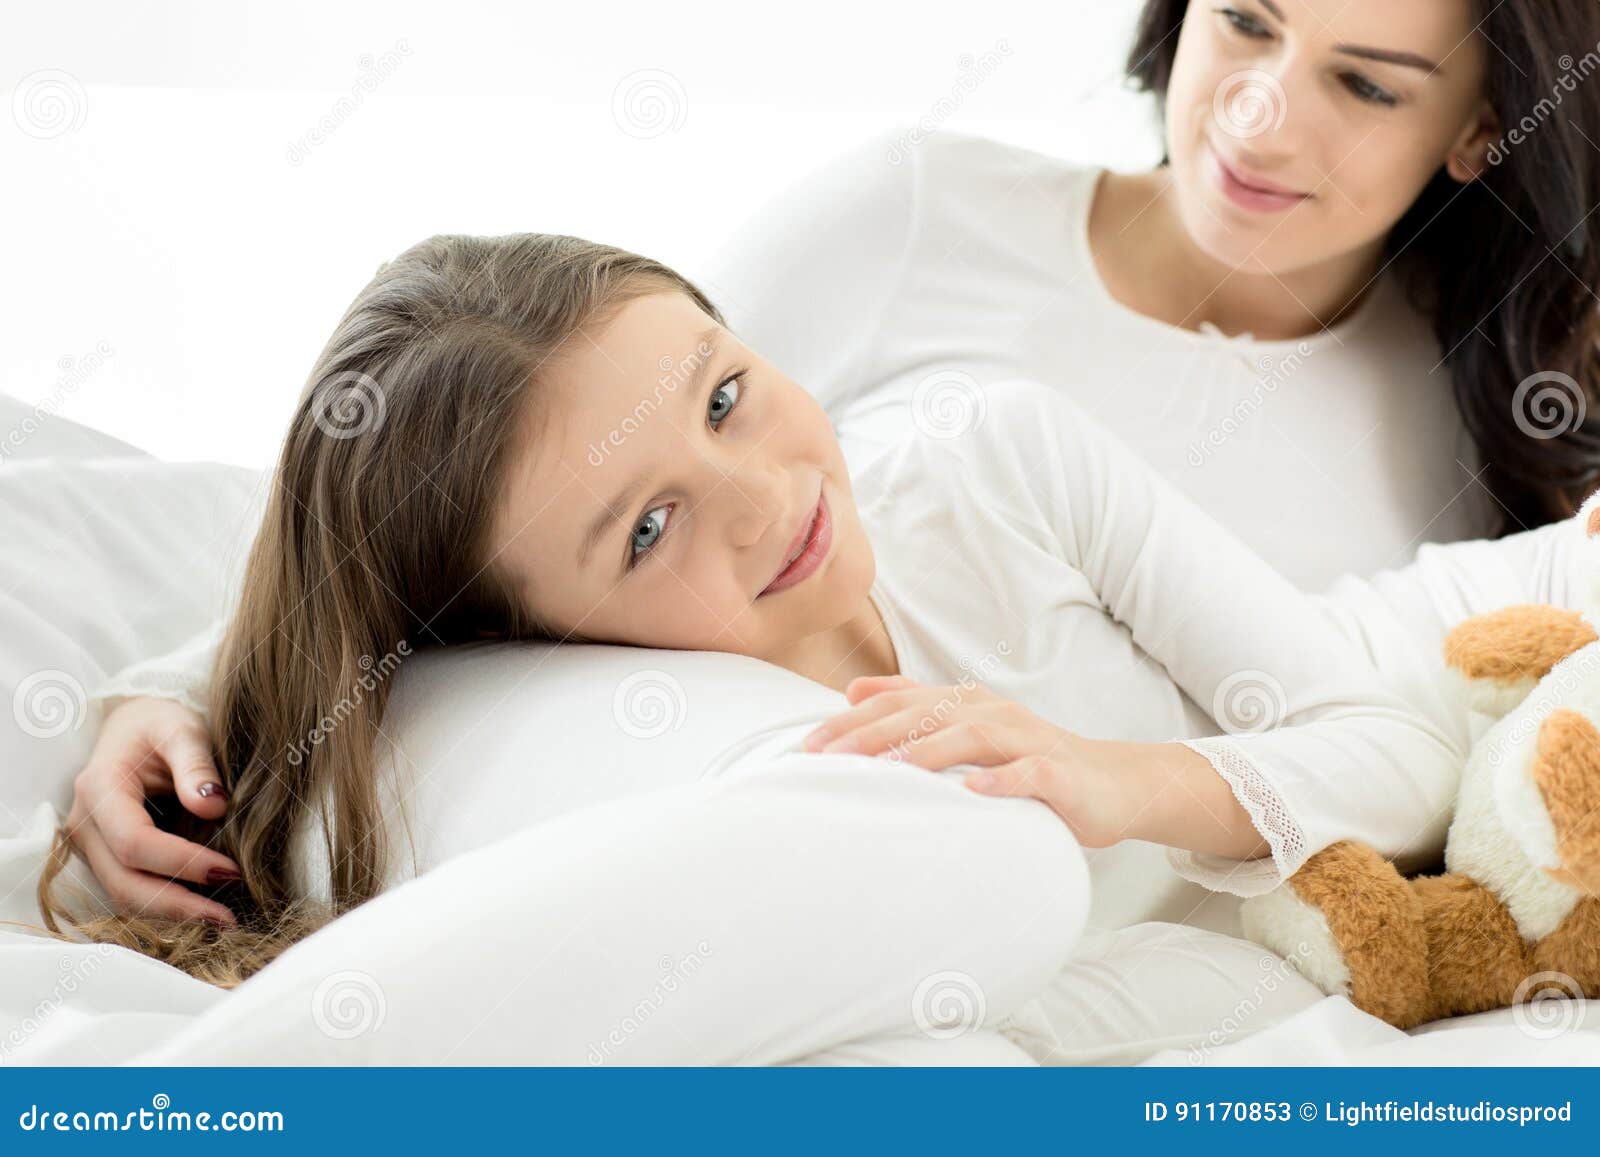 Мама лежит дочки. Мама лежит. Дочь лежит у мамы на коленях. Материнство в подростковом возрасте. Мама с дочкой лежат на кровати.